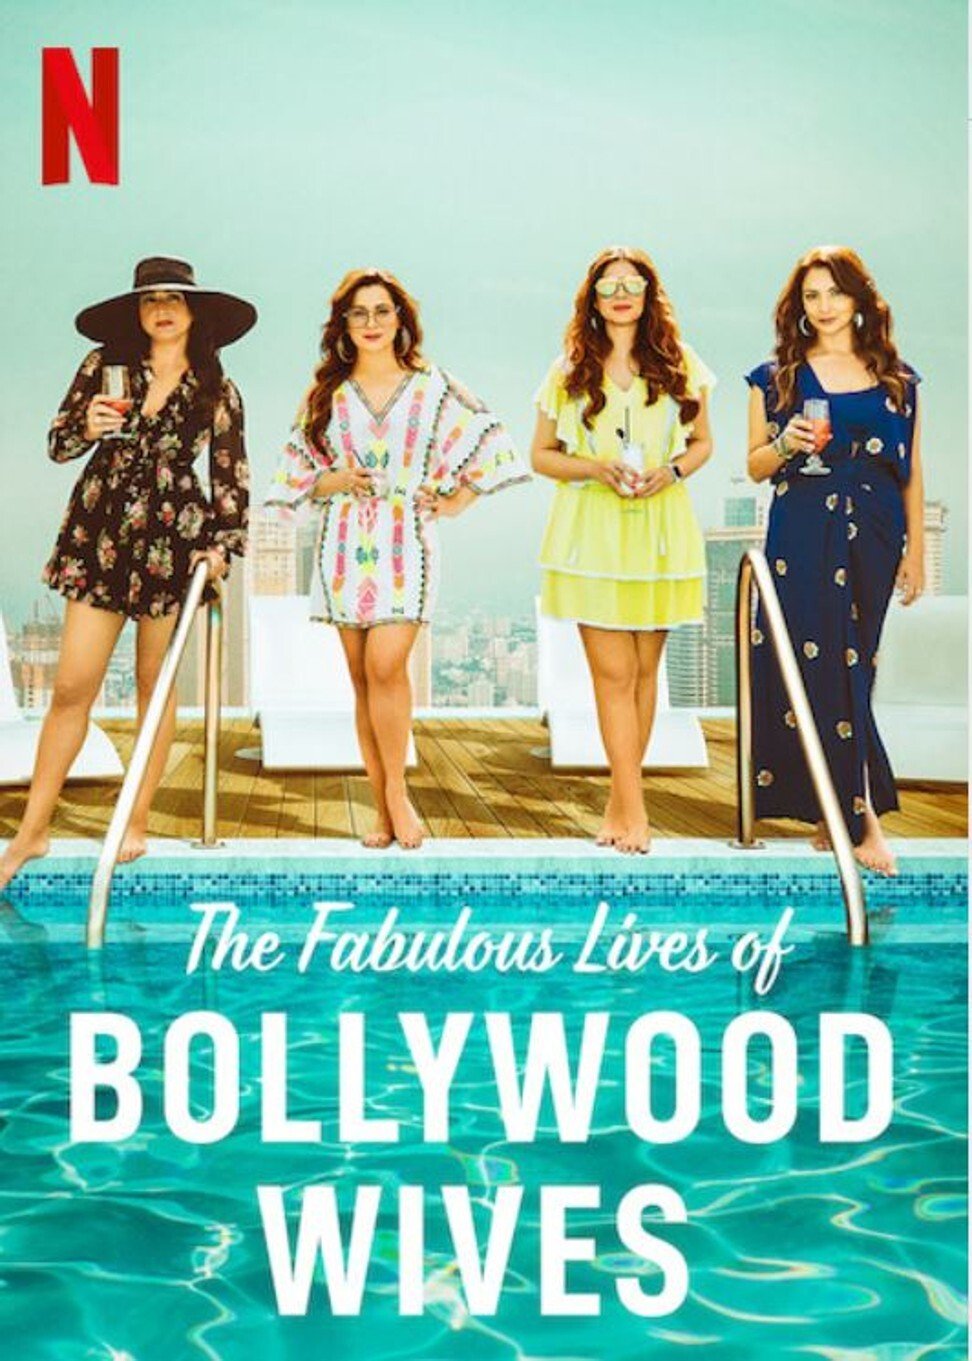 ดูหนังออนไลน์ฟรี Fabulous Lives of Bollywood Wives Season 1 Ep03 แฟบูลูส ไลฟ์ ออฟ บอลลีวู๊ด ไวส์ท ปี1 ตอนที่3